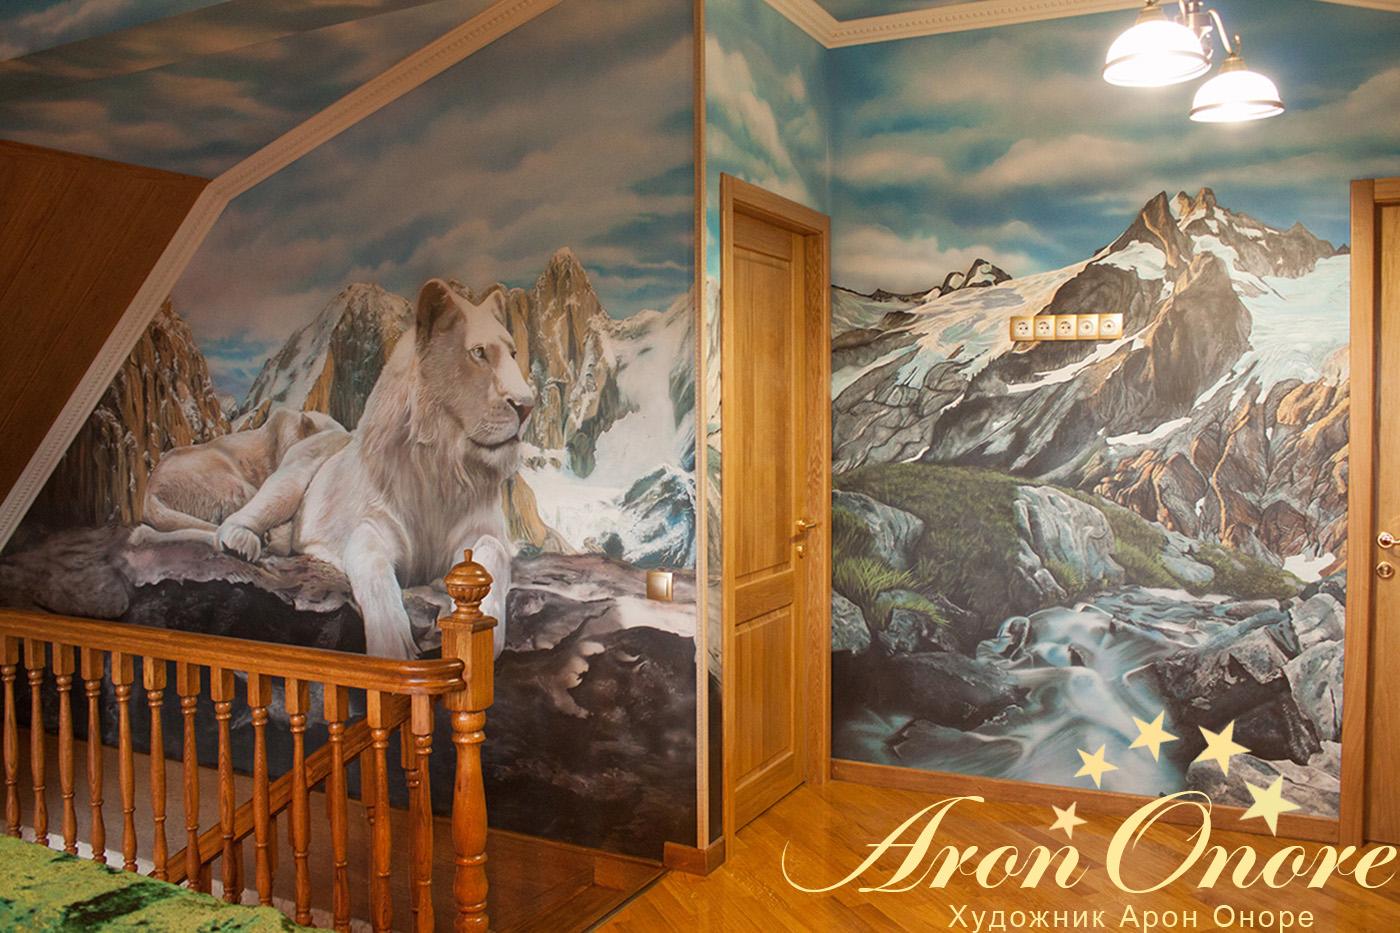 Художественная роспись стен – пейзаж (горы и лев)